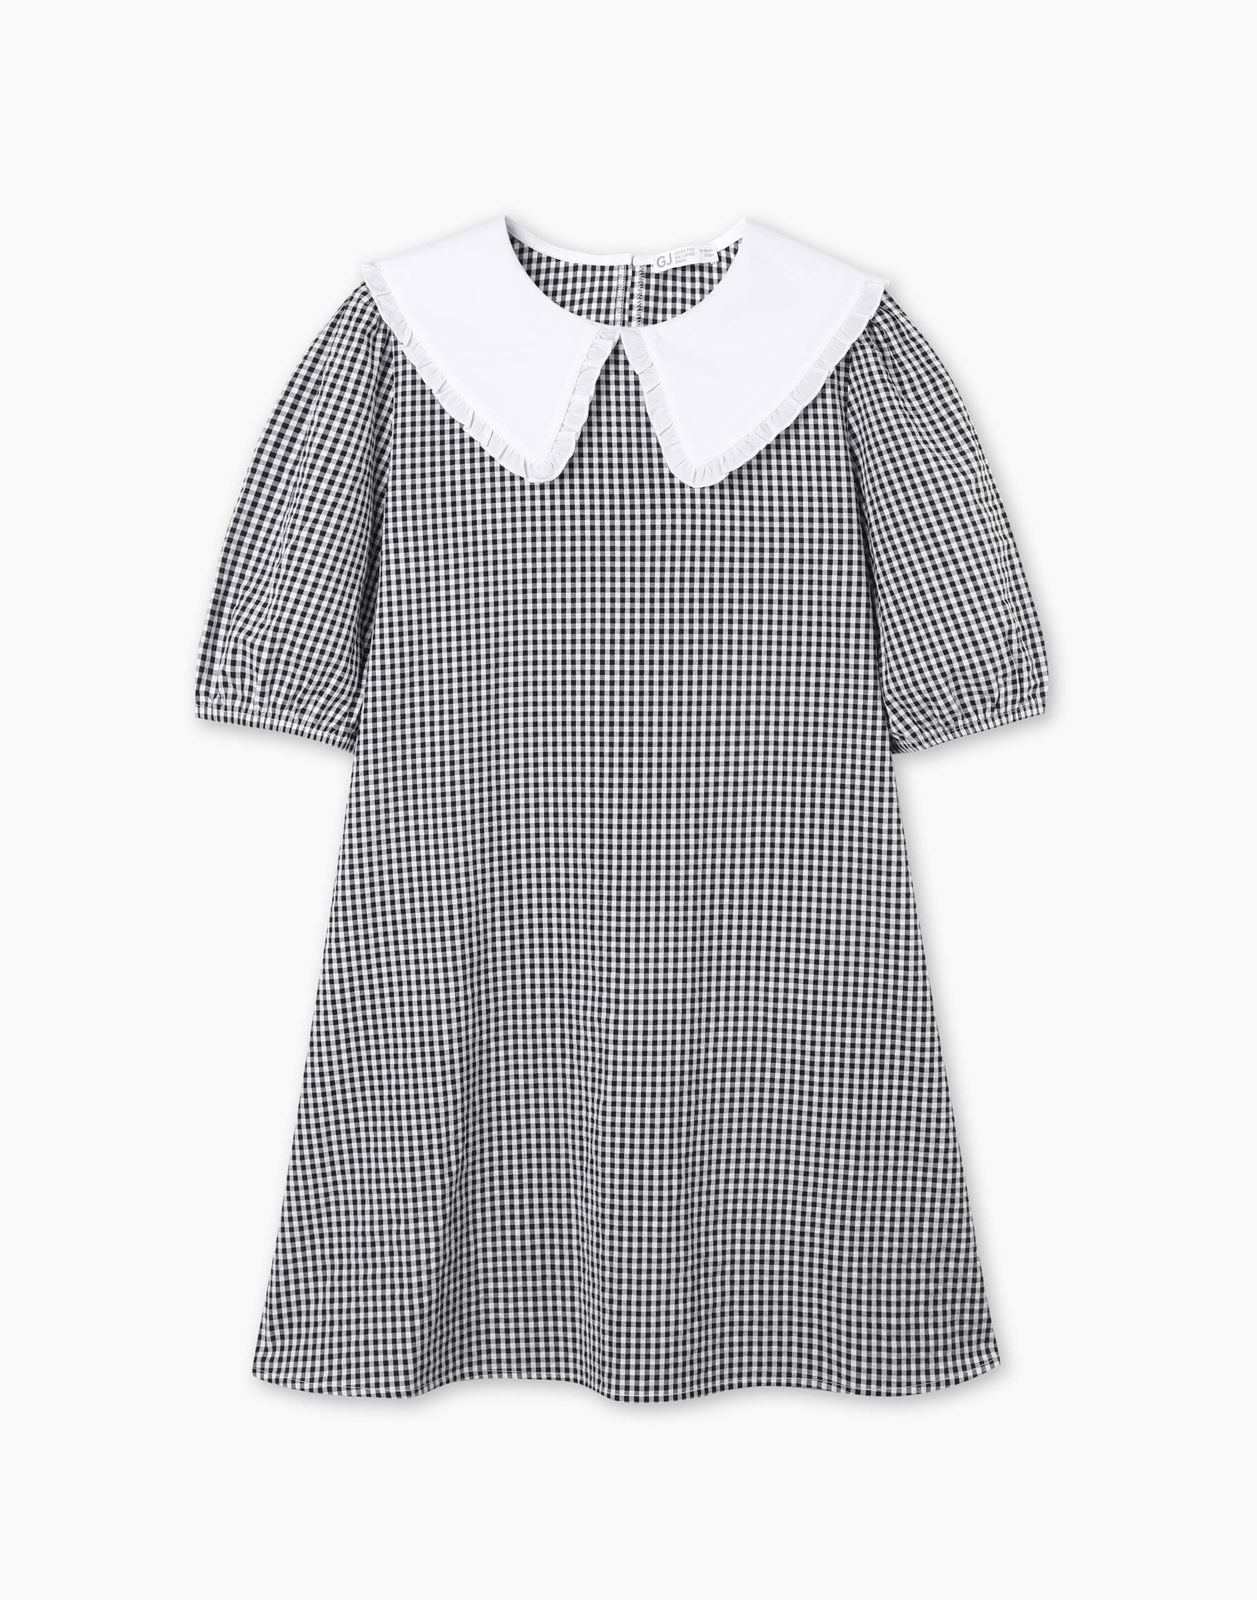 Платье детское Gloria Jeans GDR028214, белый/черный, 146